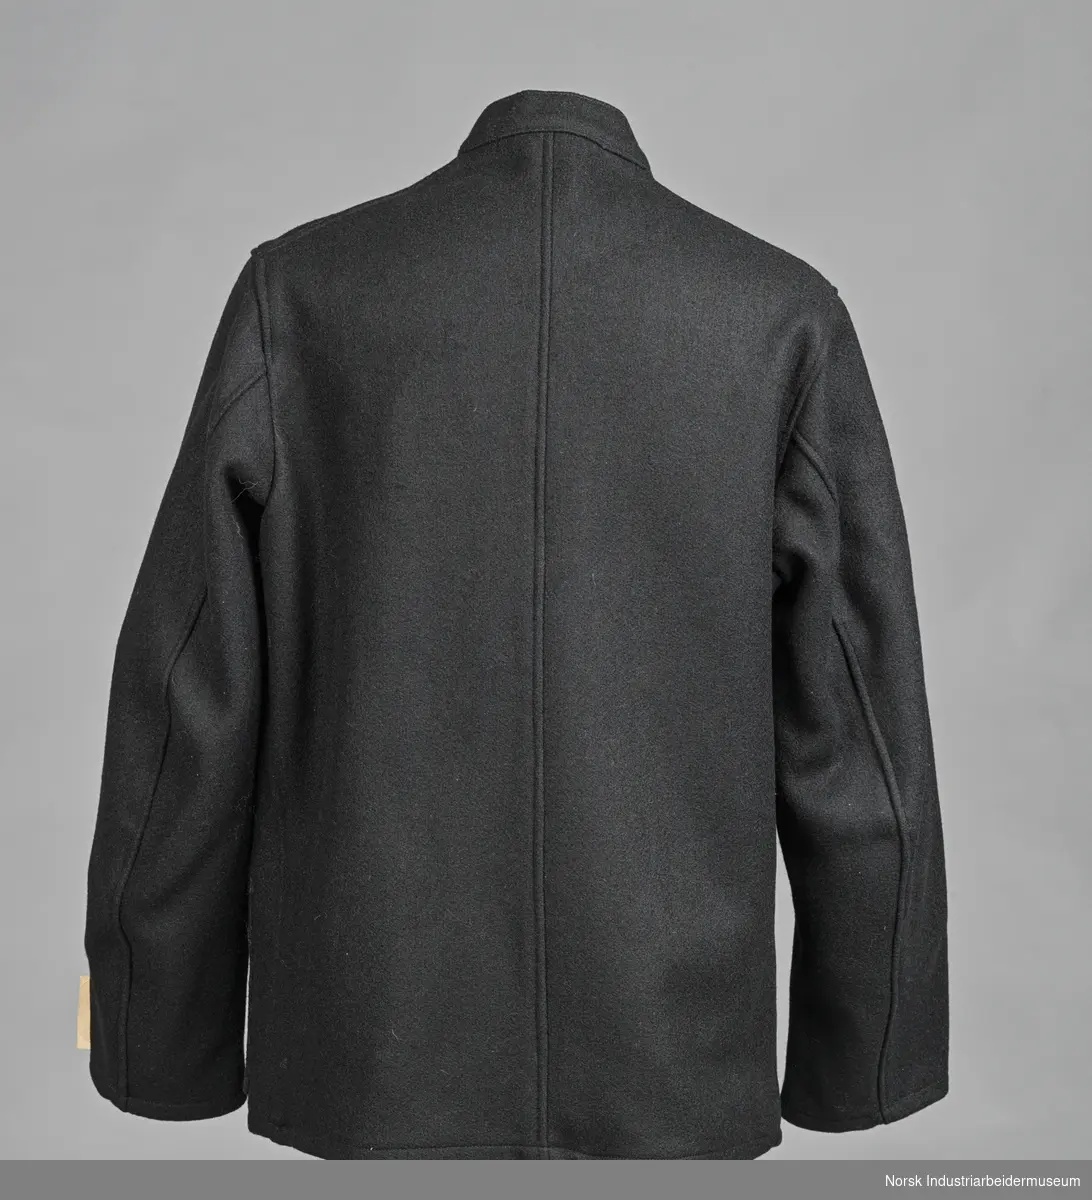 Sort arbeidsdress (jakke og bukse) med sorte blanke knapper.